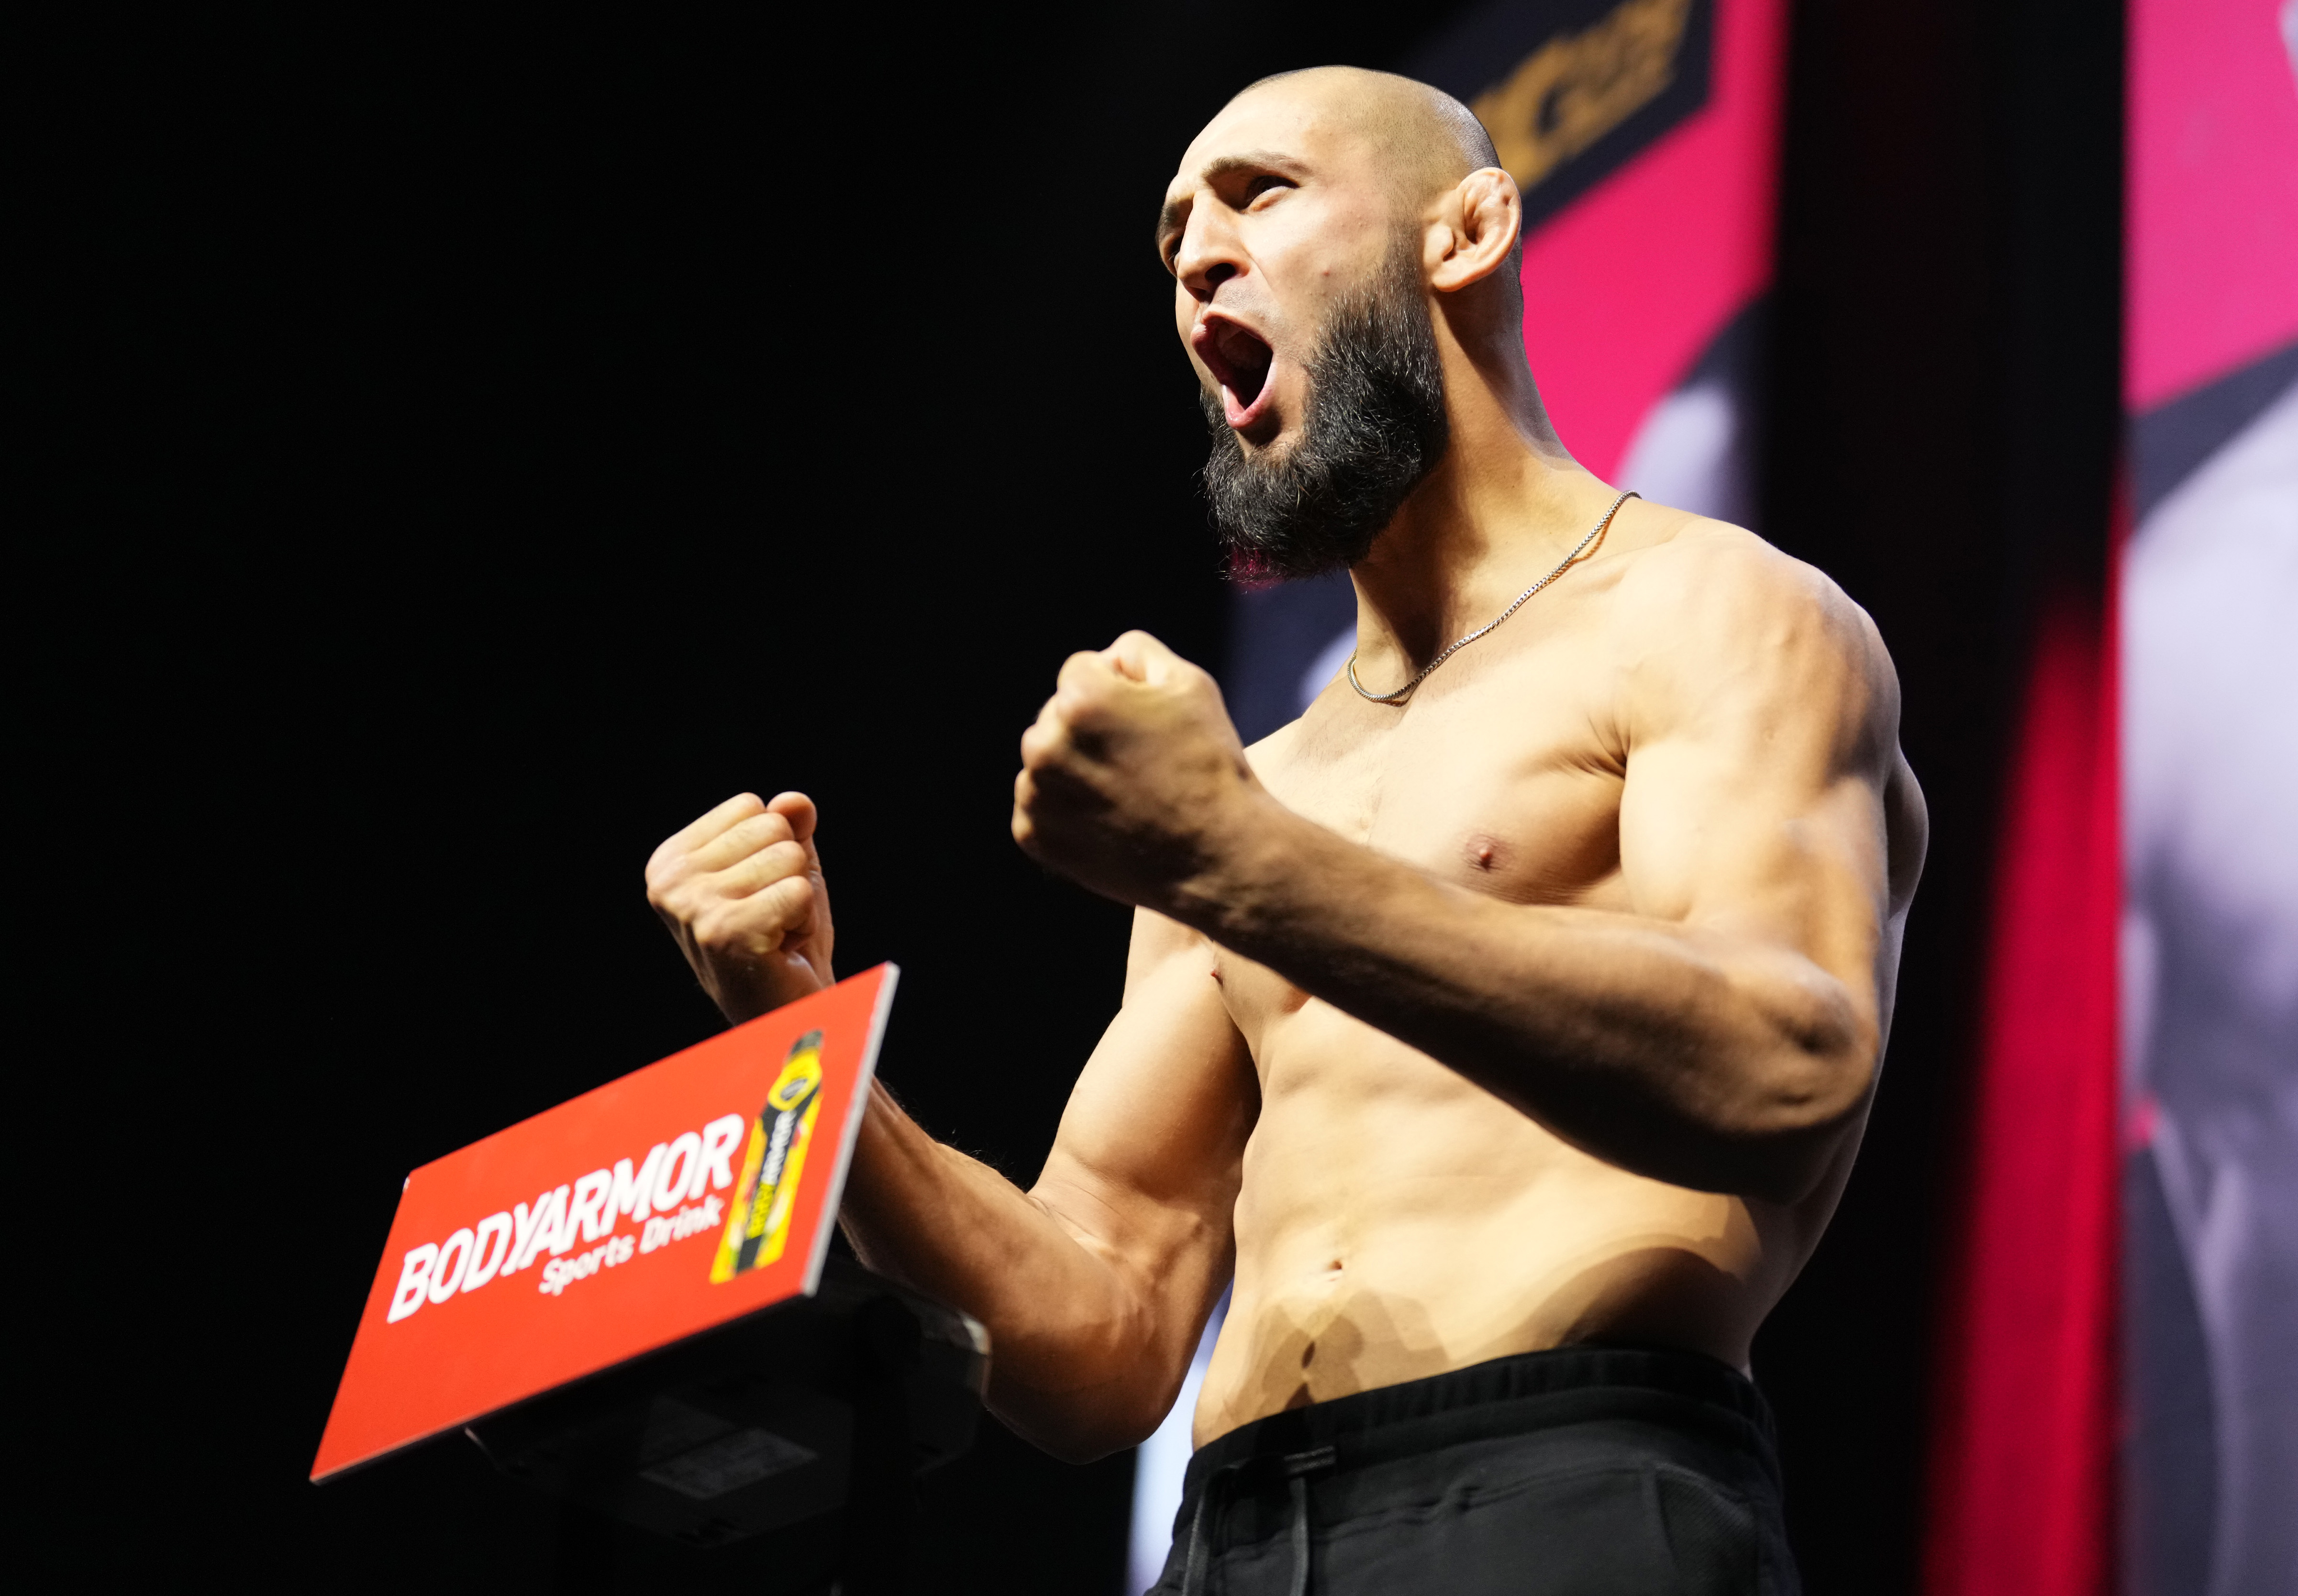 Contender: Bruna Brasil conquista vaga no UFC com nocautaço, combate